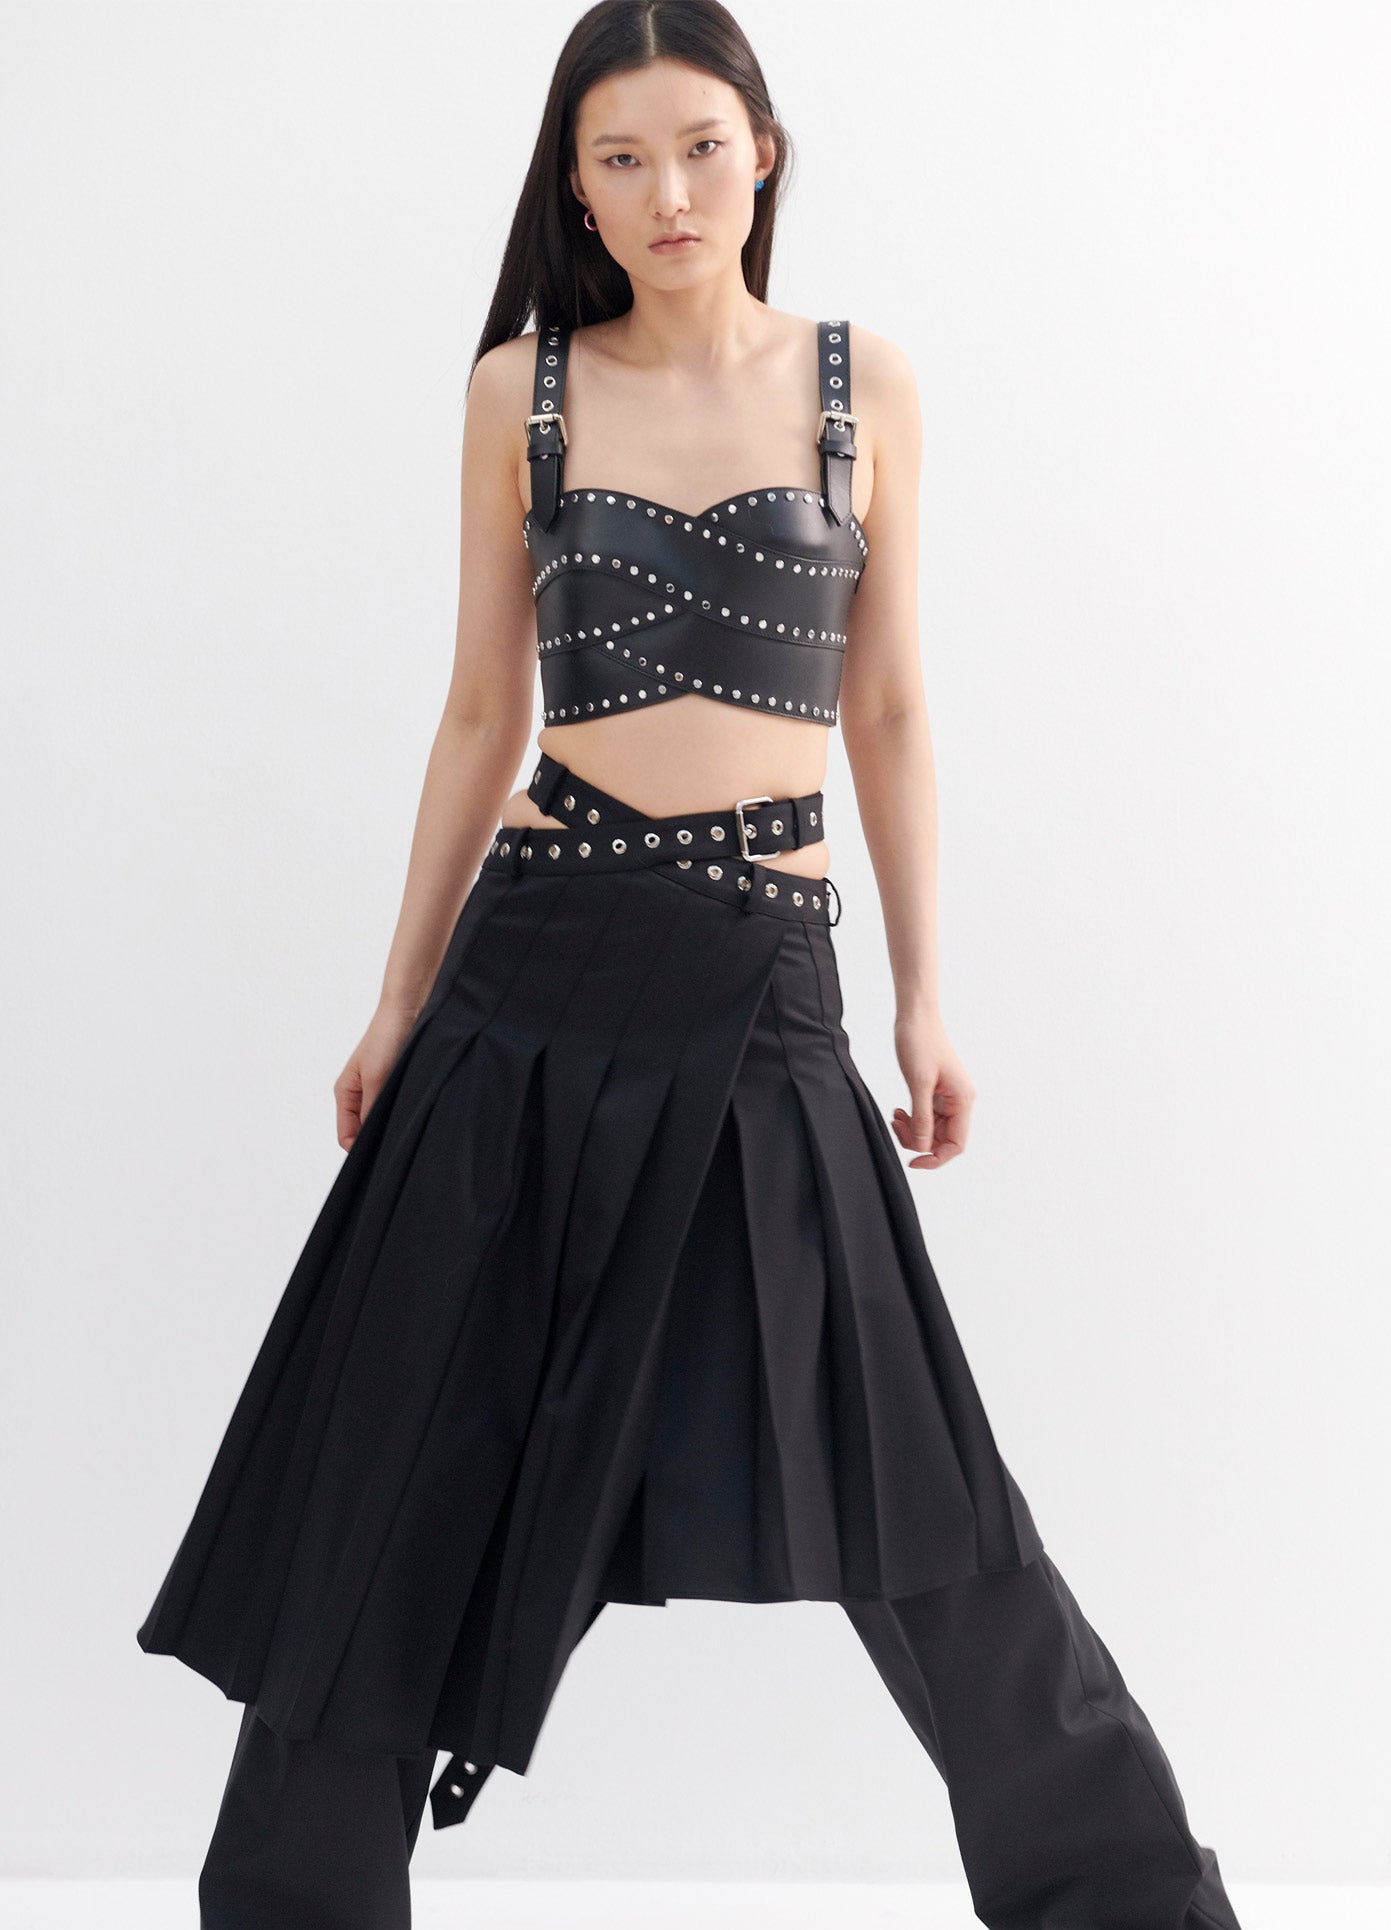 MONSE Pleated Criss Cross Waist Trouser Skirt in Black on Model Full Front View